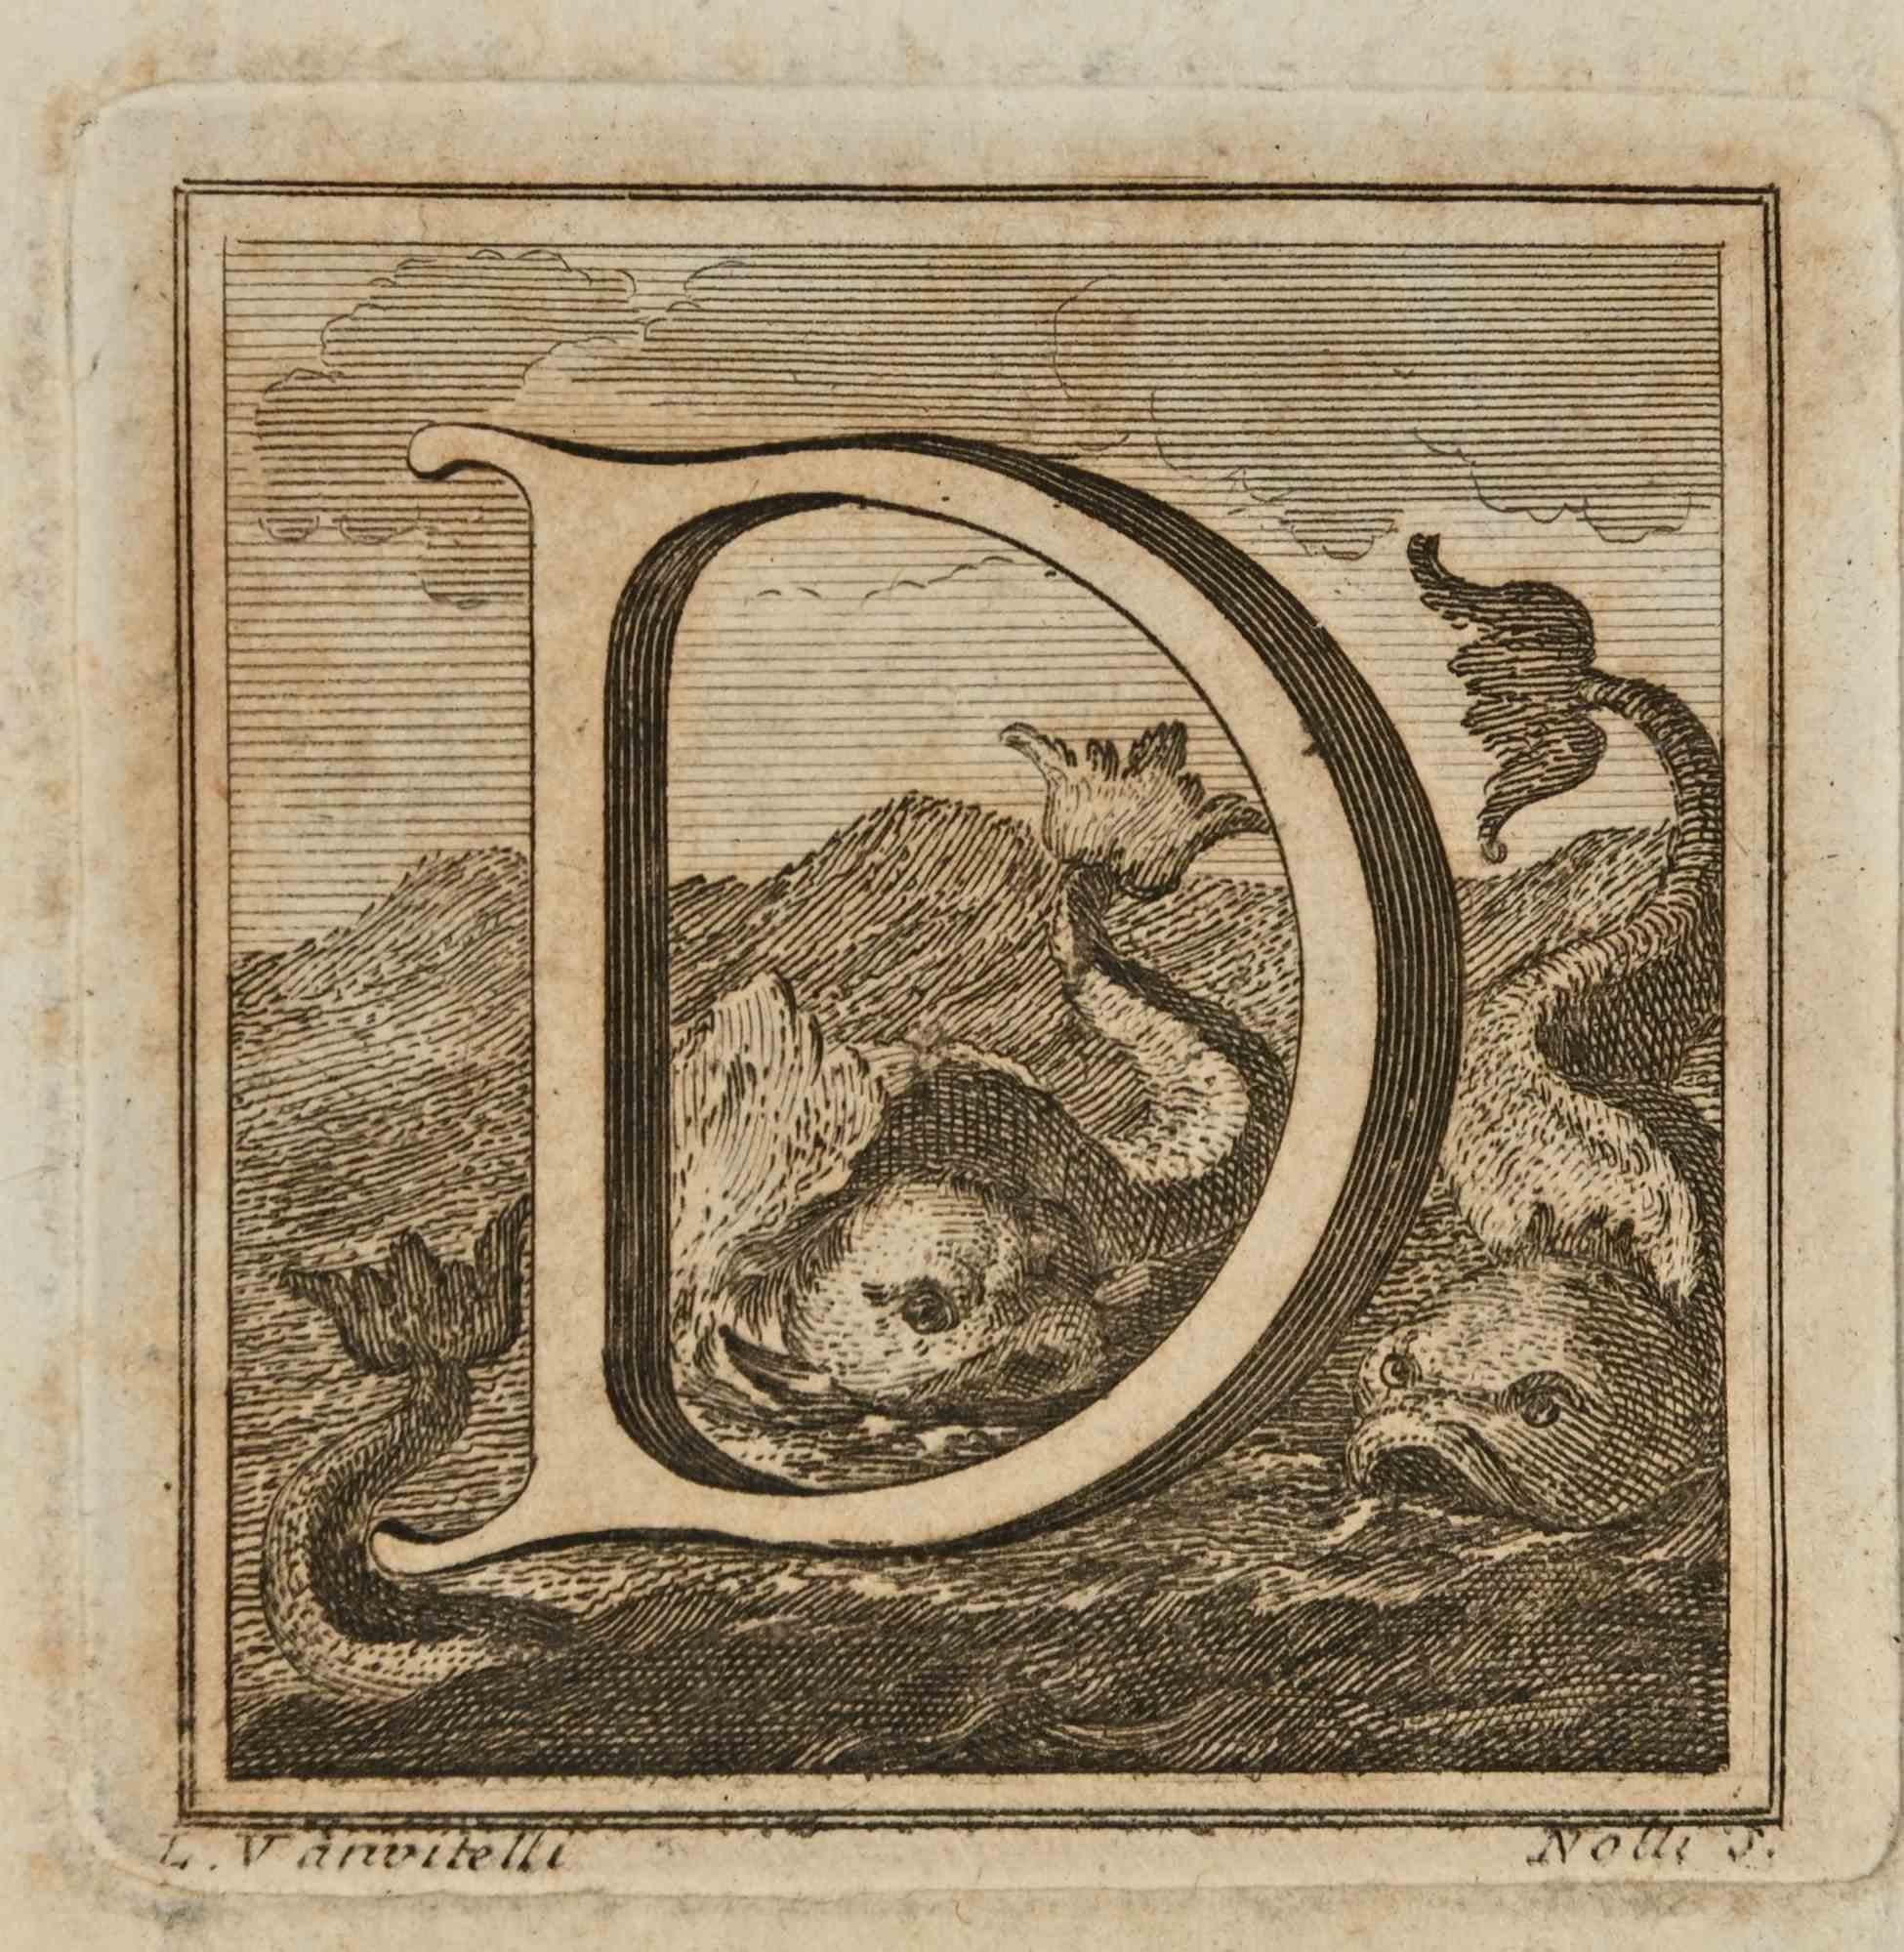 Buchstabe des Alphabets D,  aus der Serie "Altertümer von Herculaneum" ist eine Radierung auf Papier, die von Luigi Vanvitelli im 18.

Signiert auf der Platte.

Gute Bedingungen.

Die Radierung gehört zu der Druckserie "Antiquities of Herculaneum